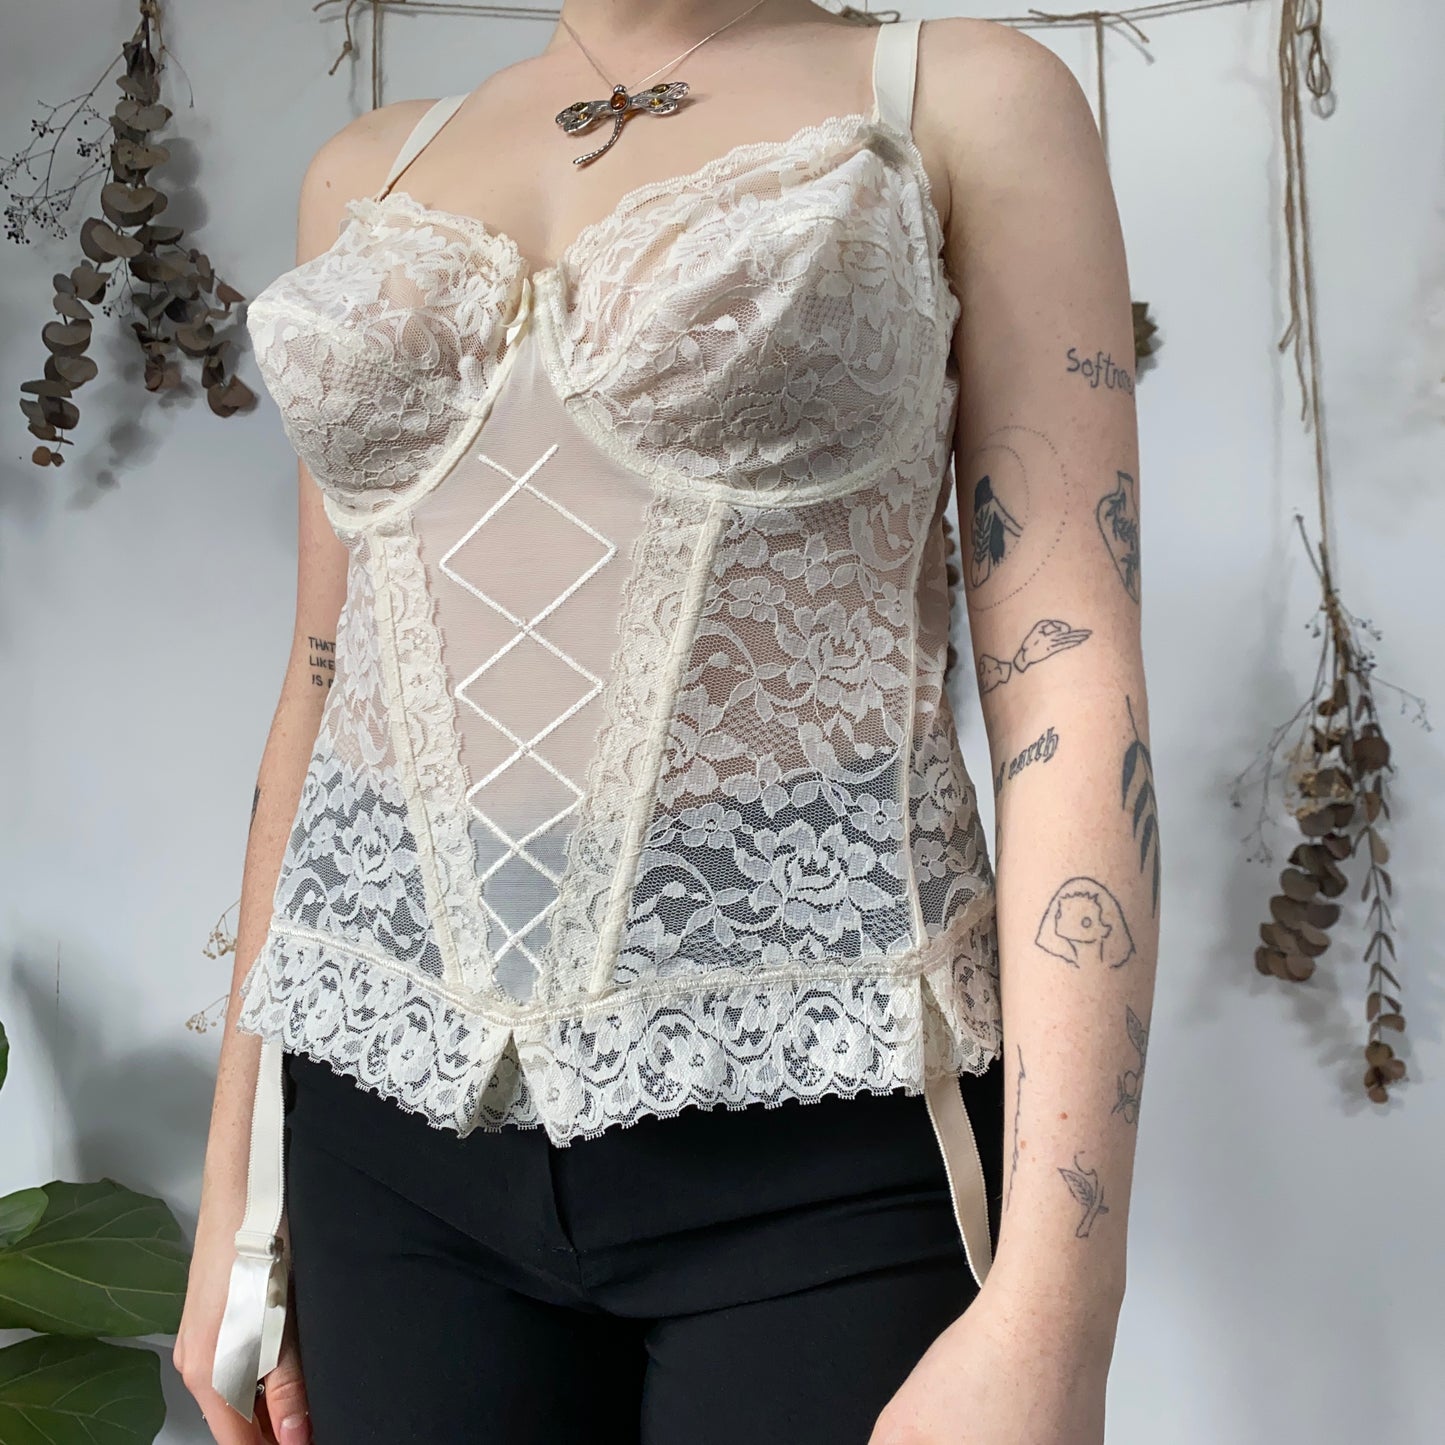 Ivory lace corset - size 40D